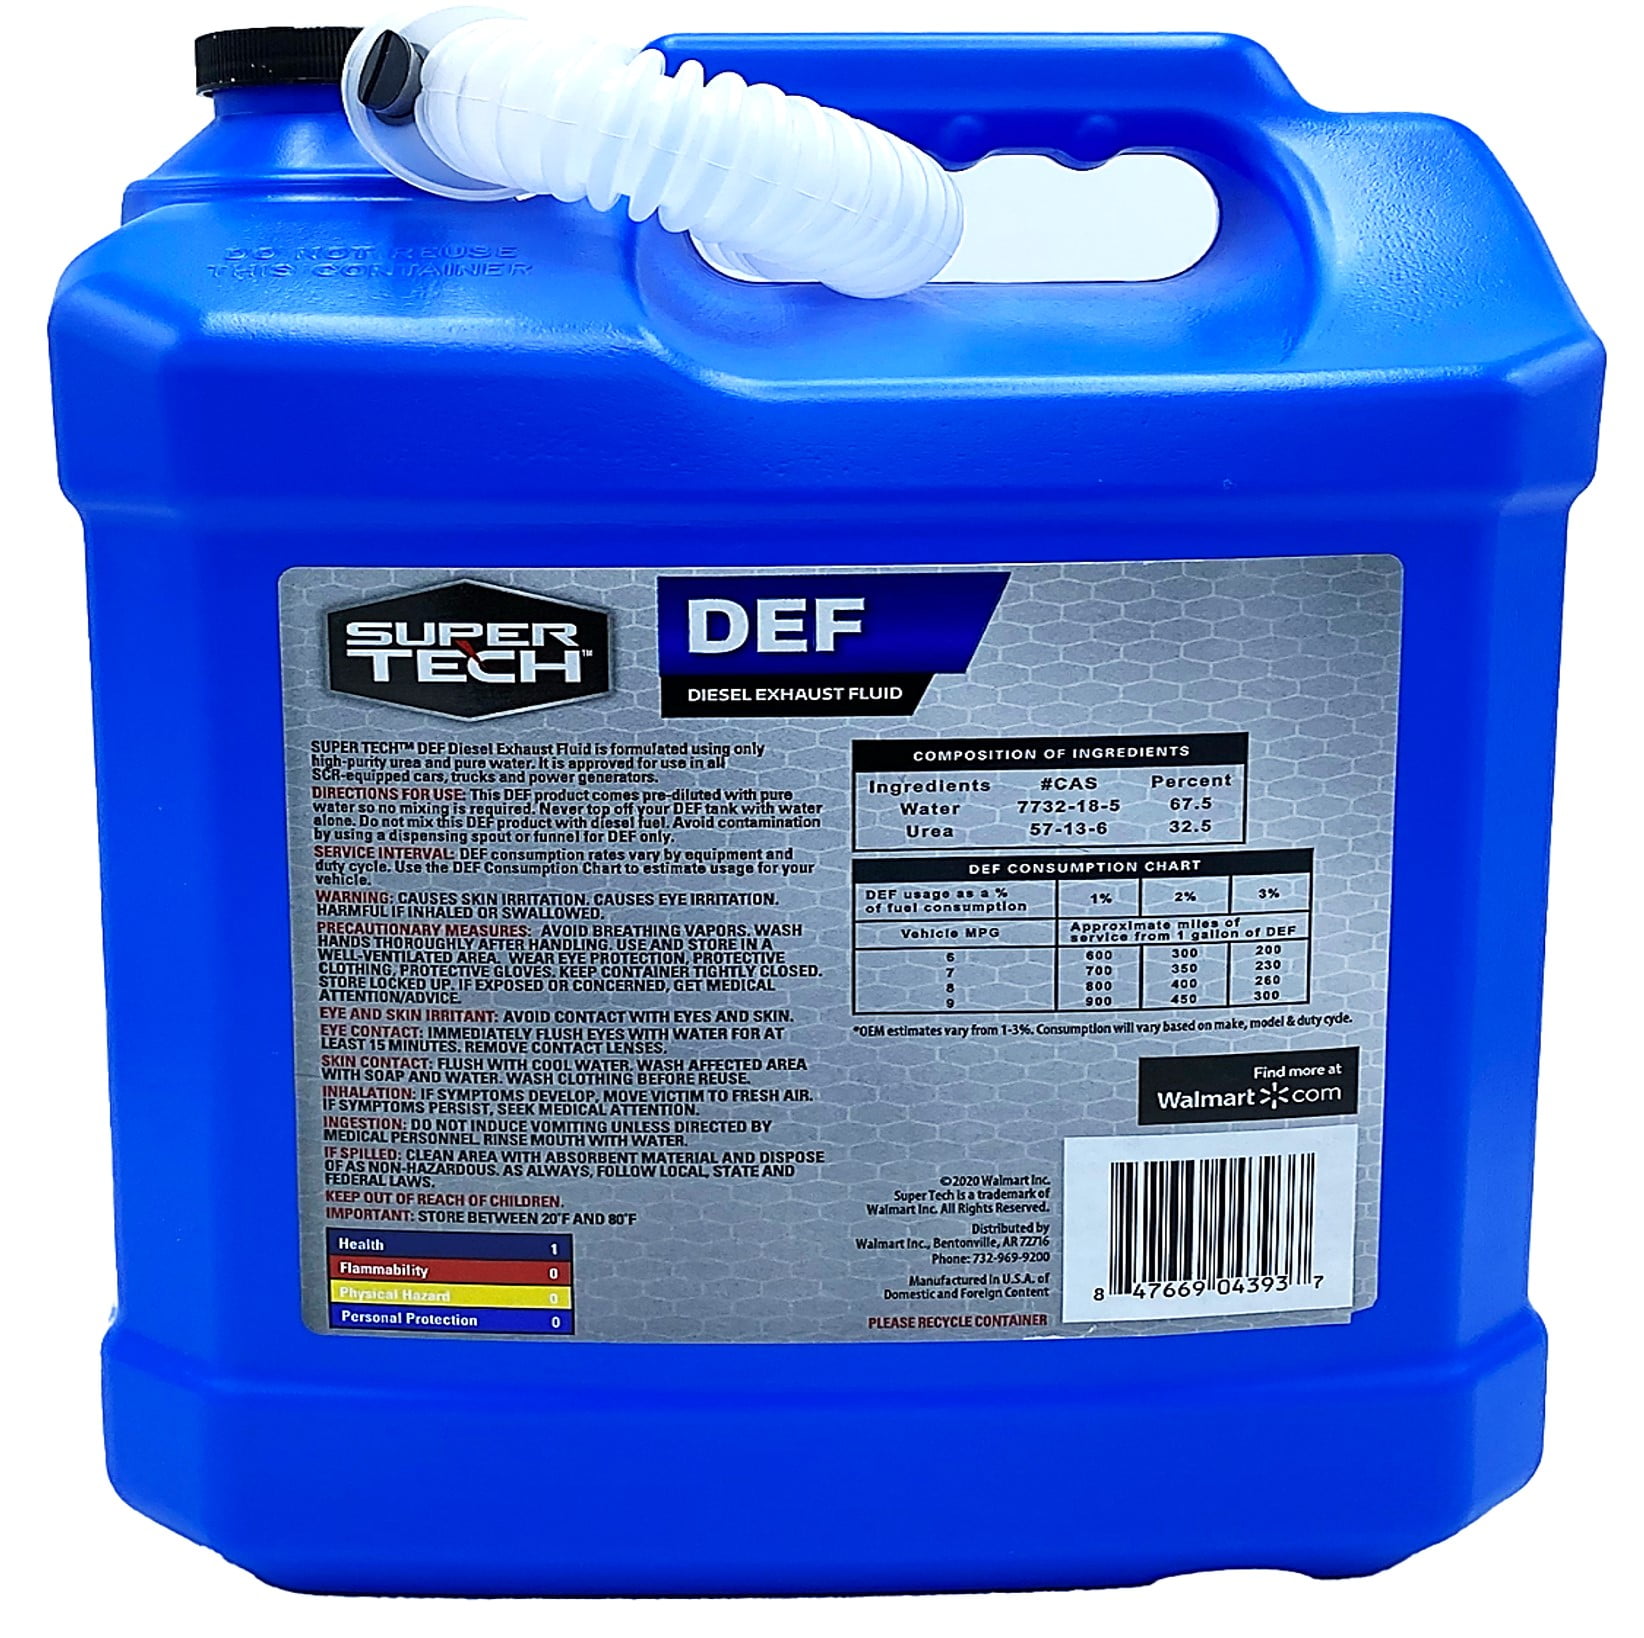 SuperTech Diesel Exhaust Fluid, 2.5 Gallon Bottle, 25 lb, 9 in H, 1 Count